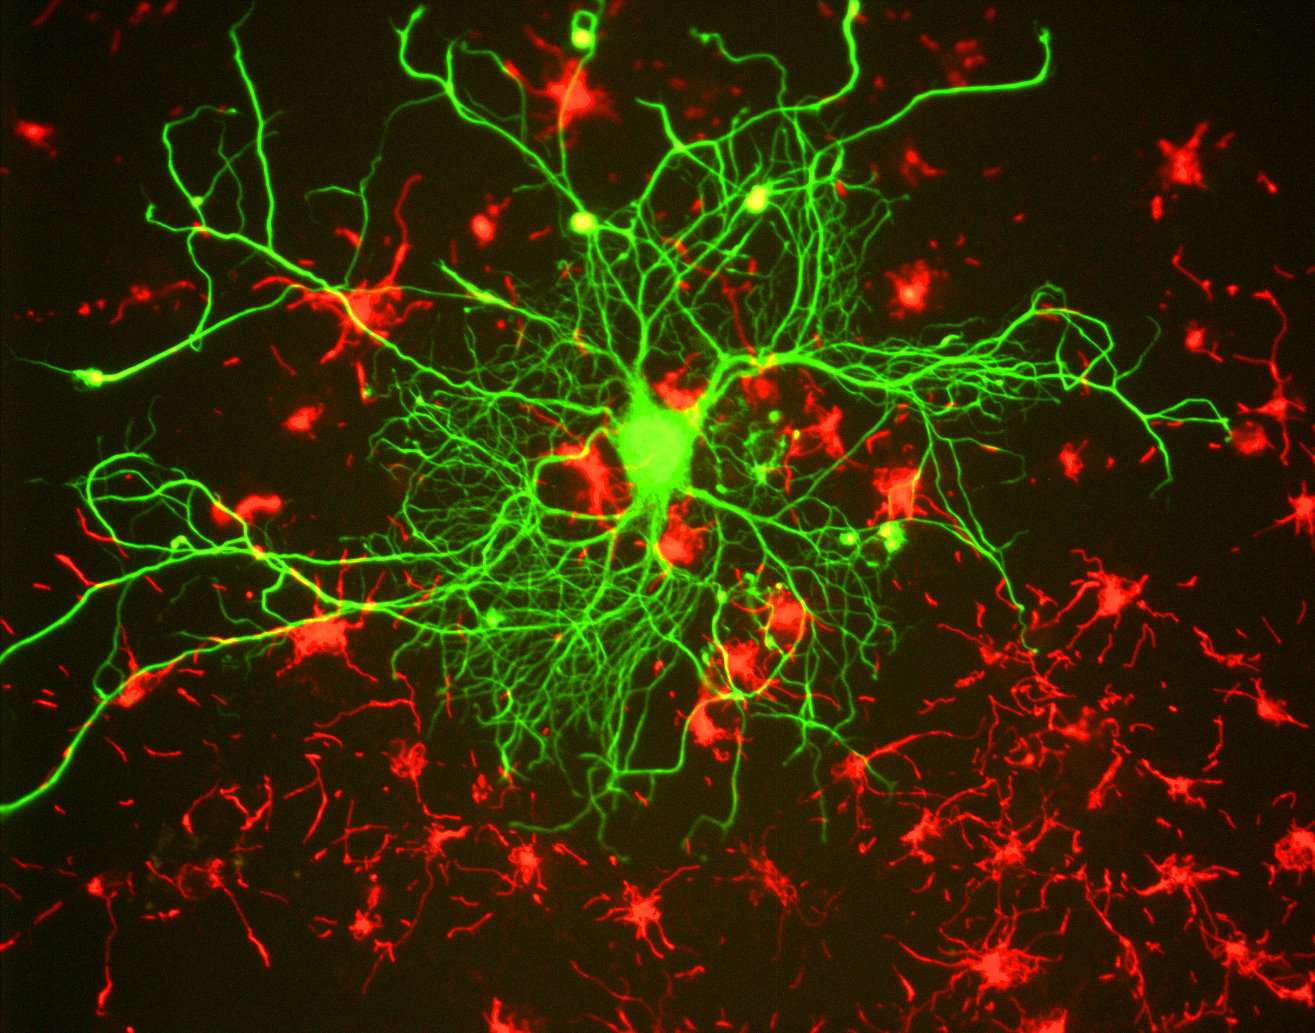 Les neurones transportent les informations via un signal bioélectrique appelé influx nerveux. Le cerveau d'un humain posséderait approximativement 100 milliards de neurones, soit environ 14 fois plus que le nombre d'êtres humains sur Terre. L’implantation de neurones issus de cellules de peau dans le cerveau est l’une des pistes de traitement des maladies dégénératives. © Gerry Shaw, Wikimedia Commons, cc by sa 3.0